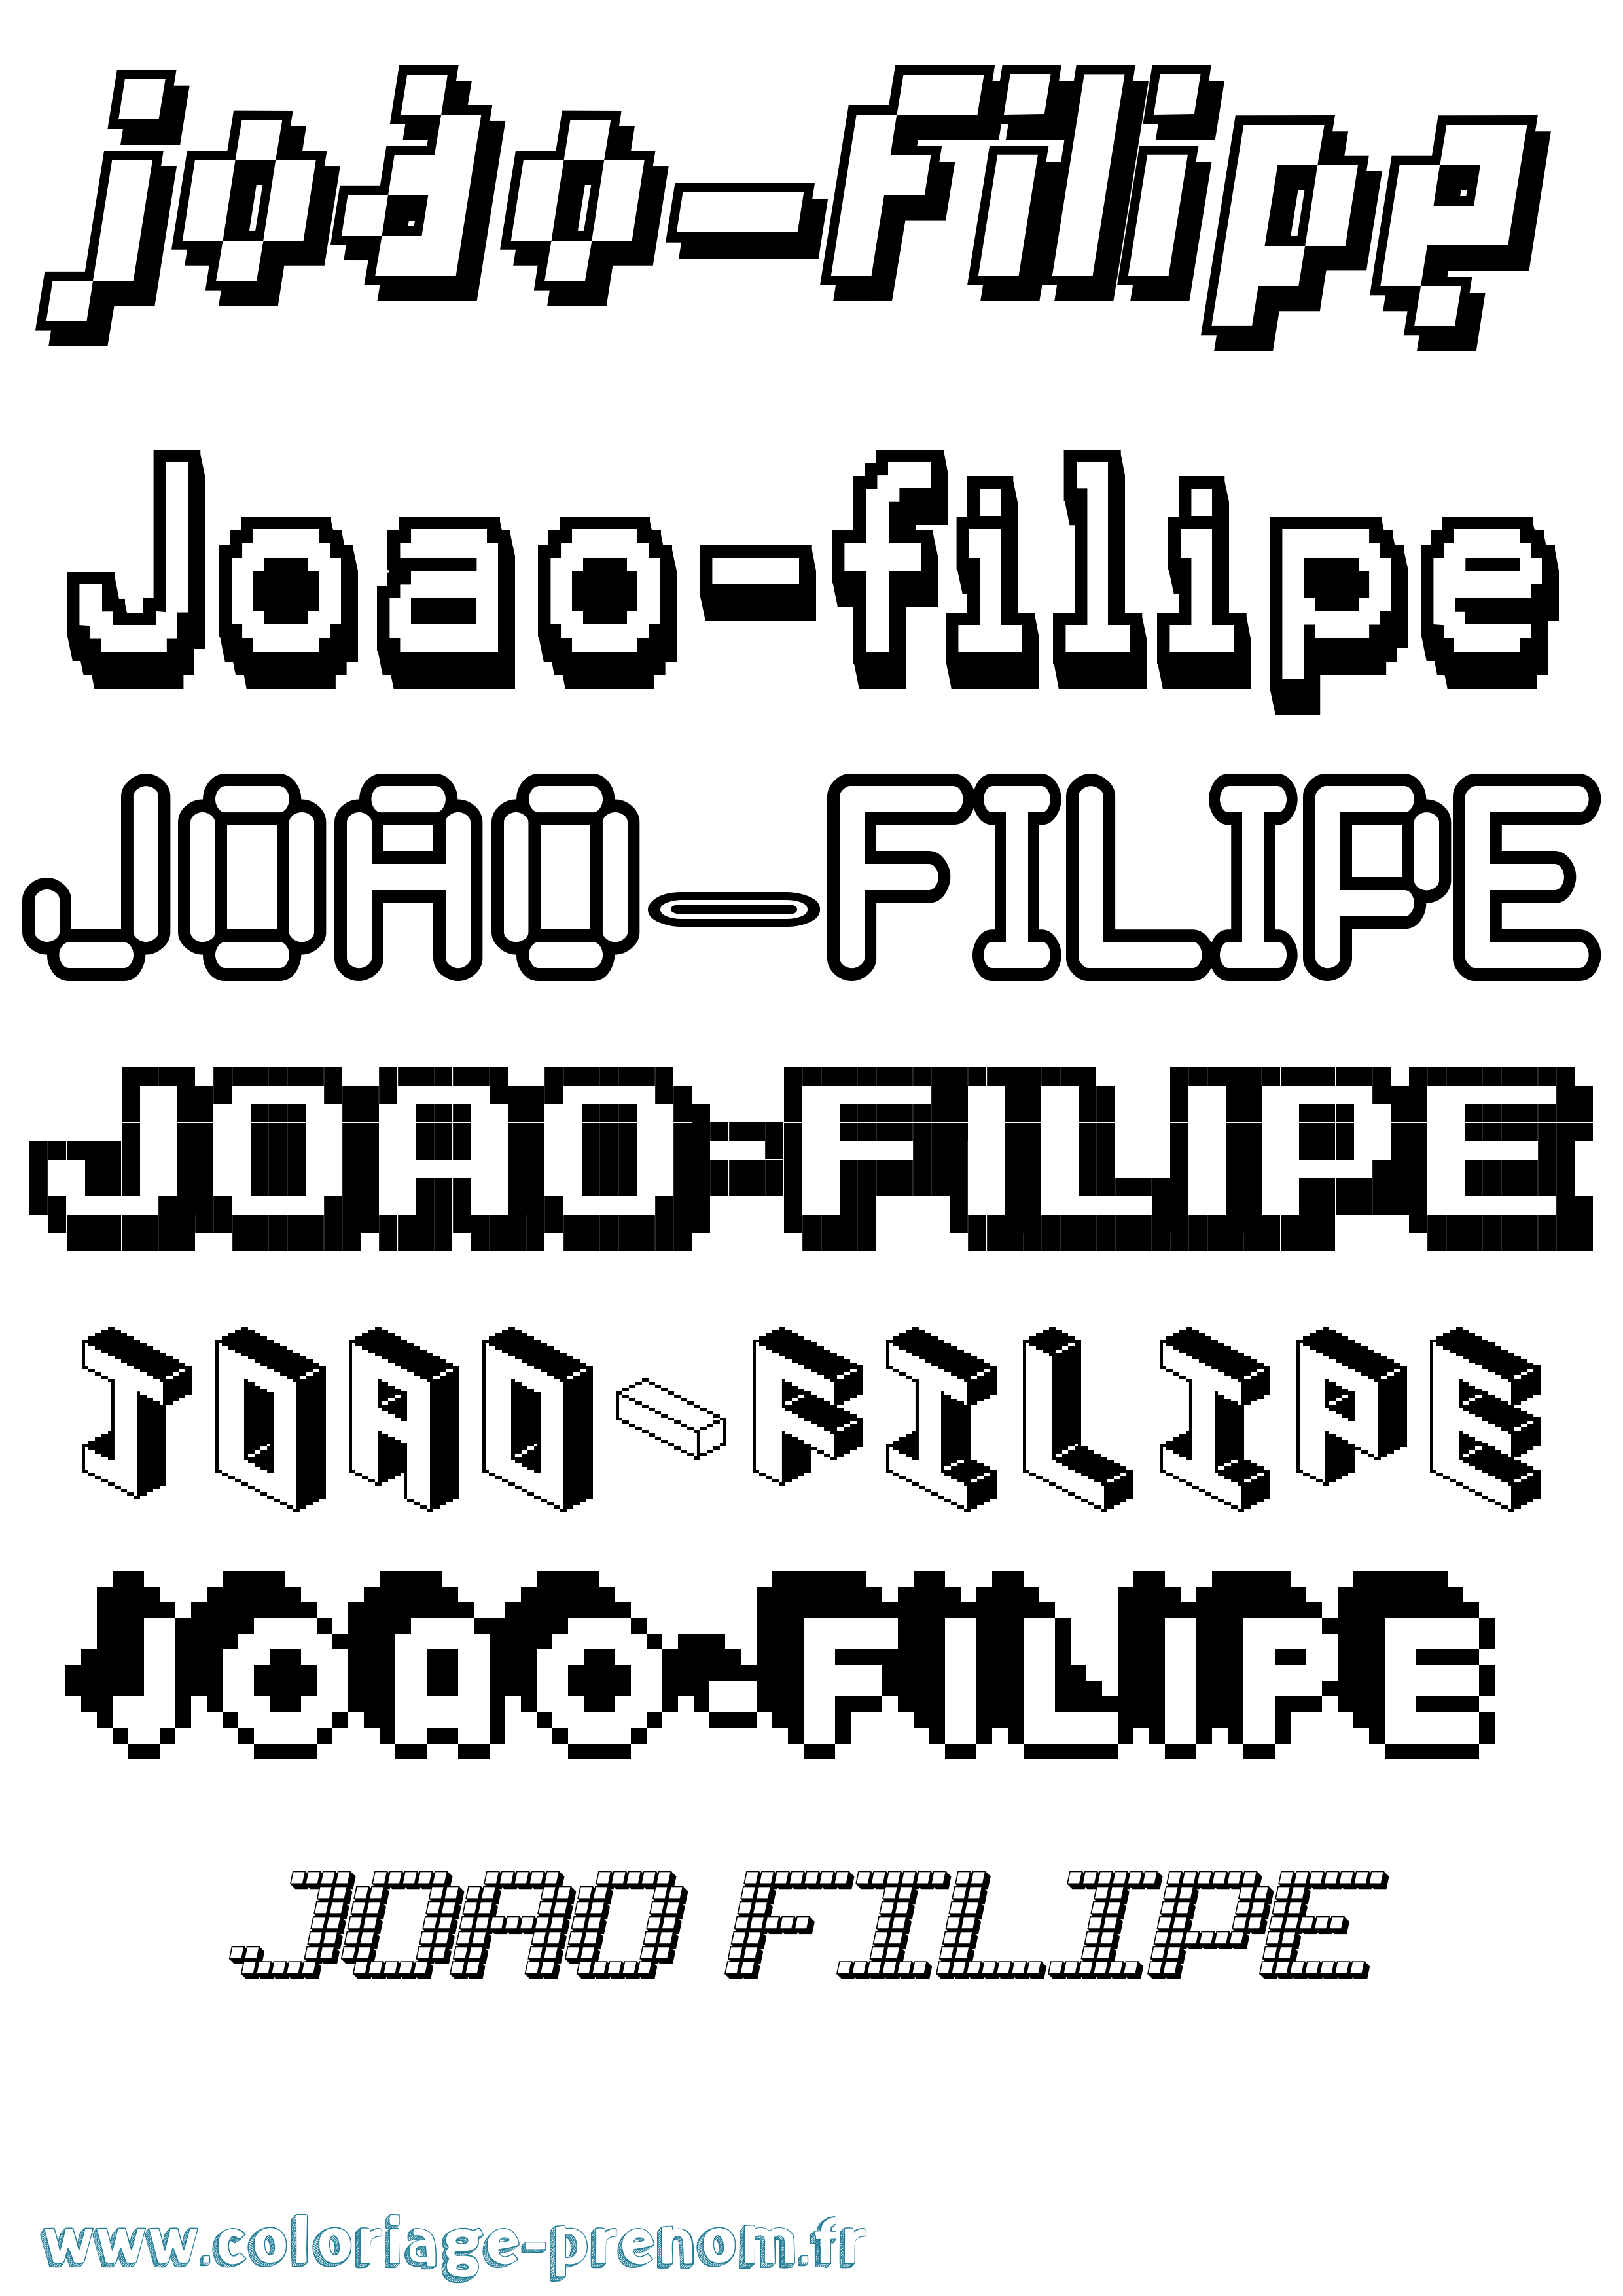 Coloriage prénom Joao-Filipe Pixel